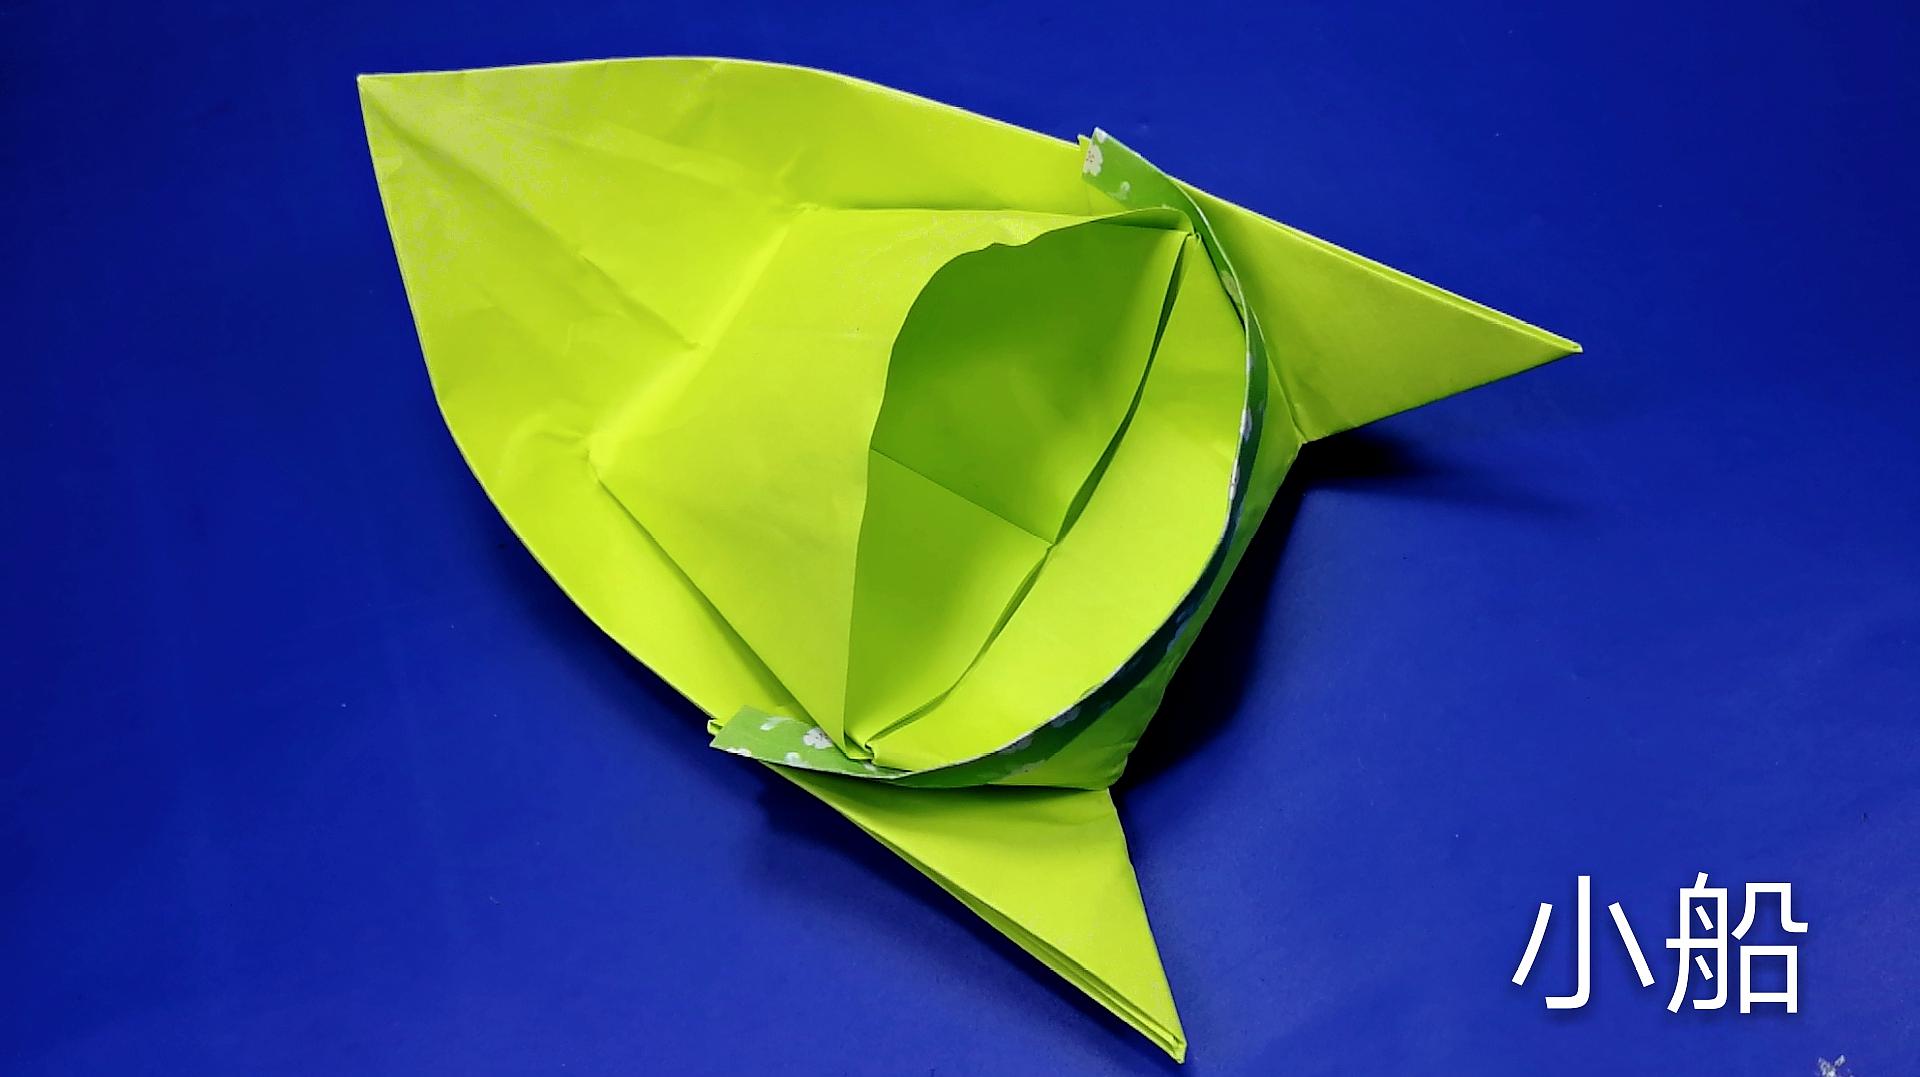 幼儿折纸大全,折一只可爱的纸船给孩子玩吧,小船折纸视频教程